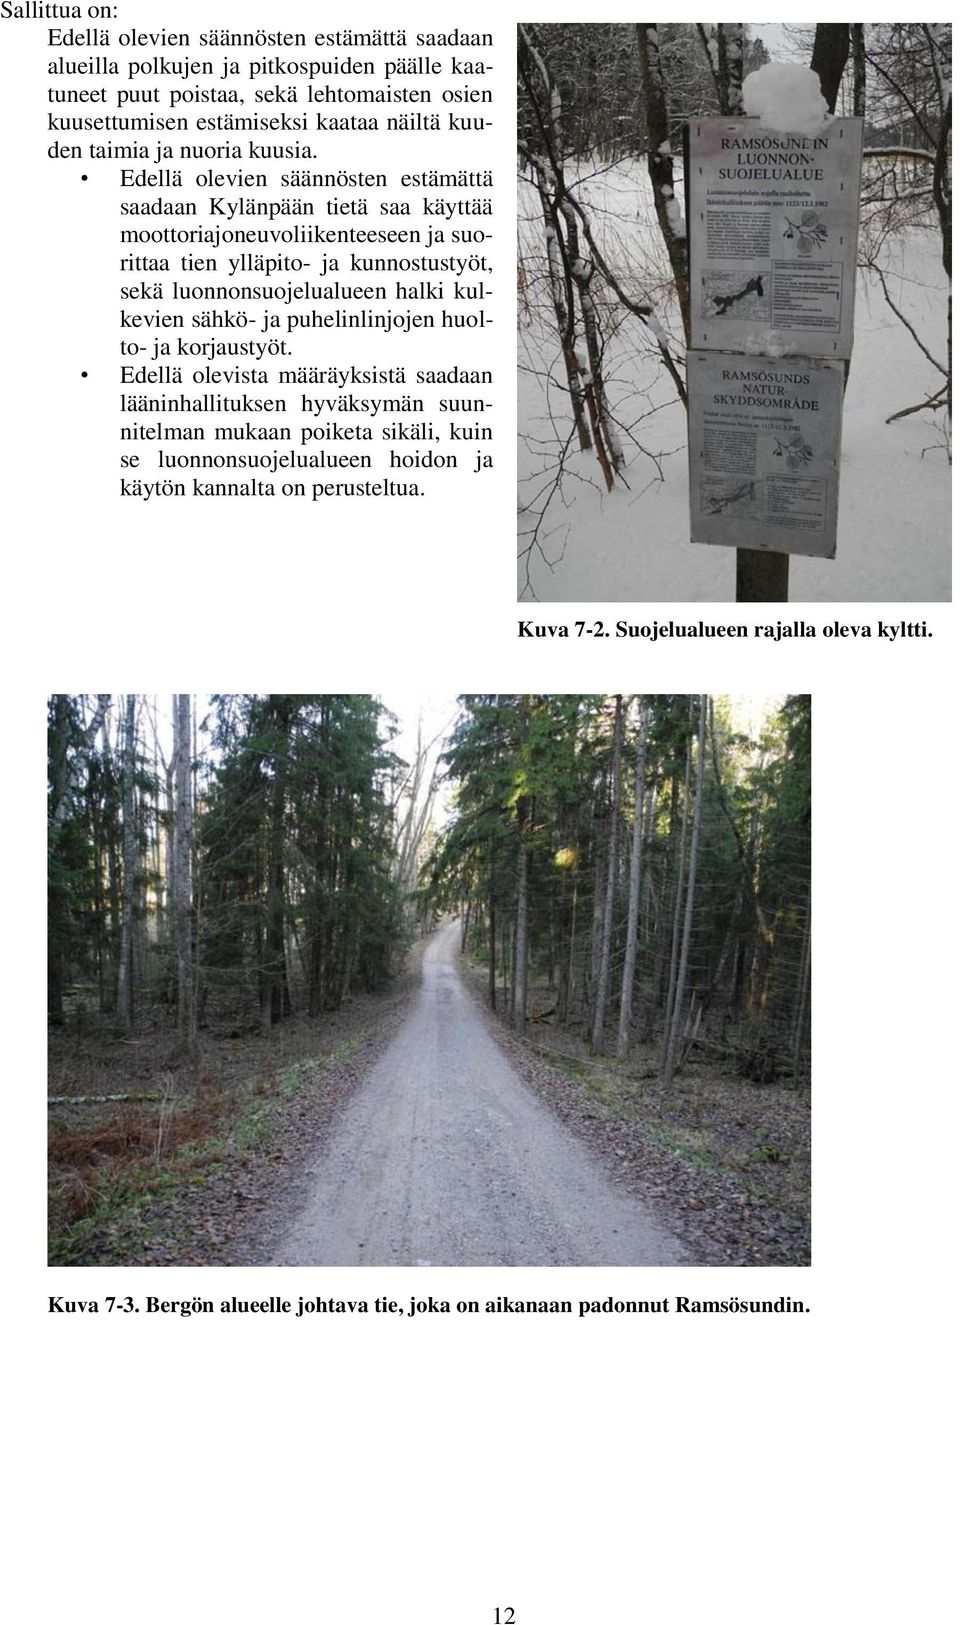 Edellä olevien säännösten estämättä saadaan Kylänpään tietä saa käyttää moottoriajoneuvoliikenteeseen ja suorittaa tien ylläpito- ja kunnostustyöt, sekä luonnonsuojelualueen halki kulkevien